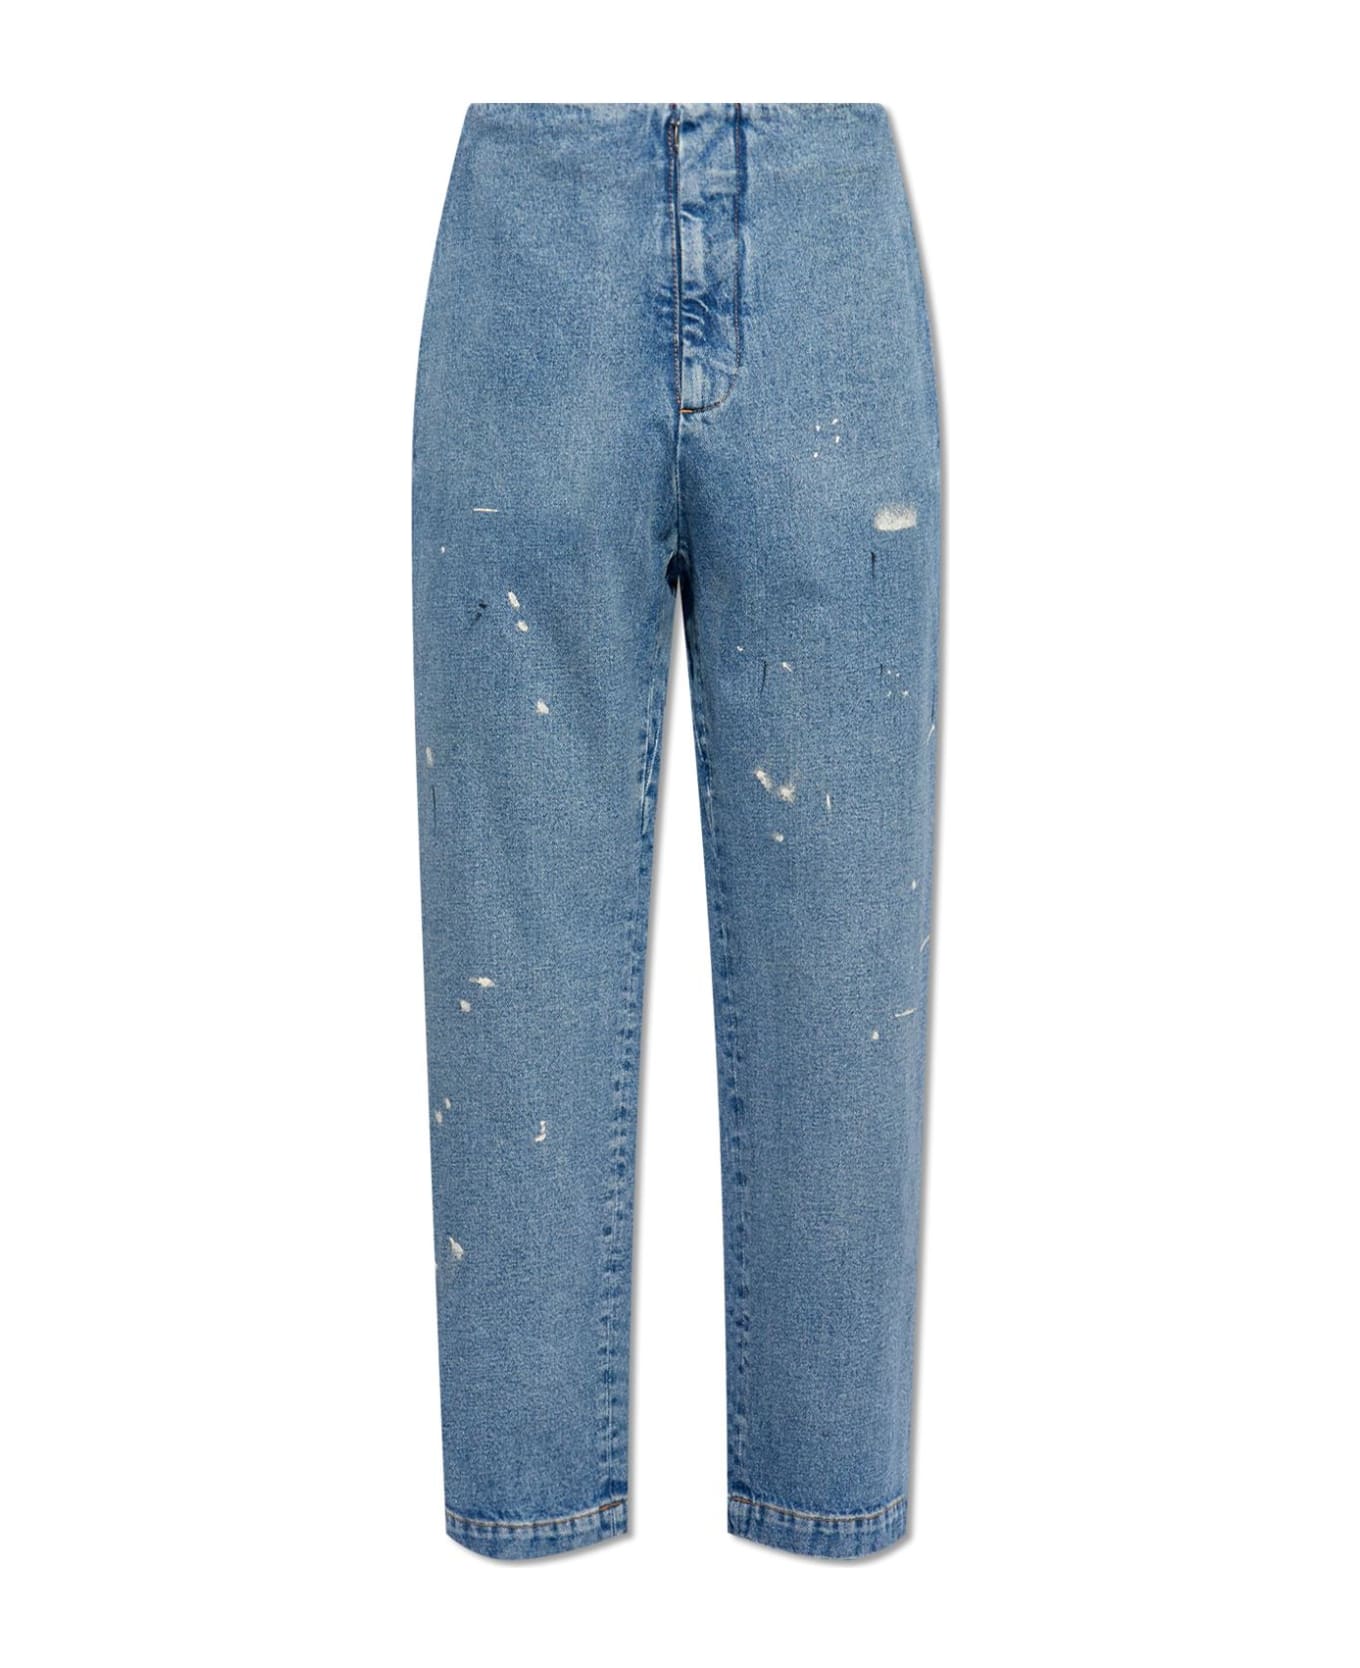 MM6 Maison Margiela Jeans With Paint Splatters - BLUE デニム